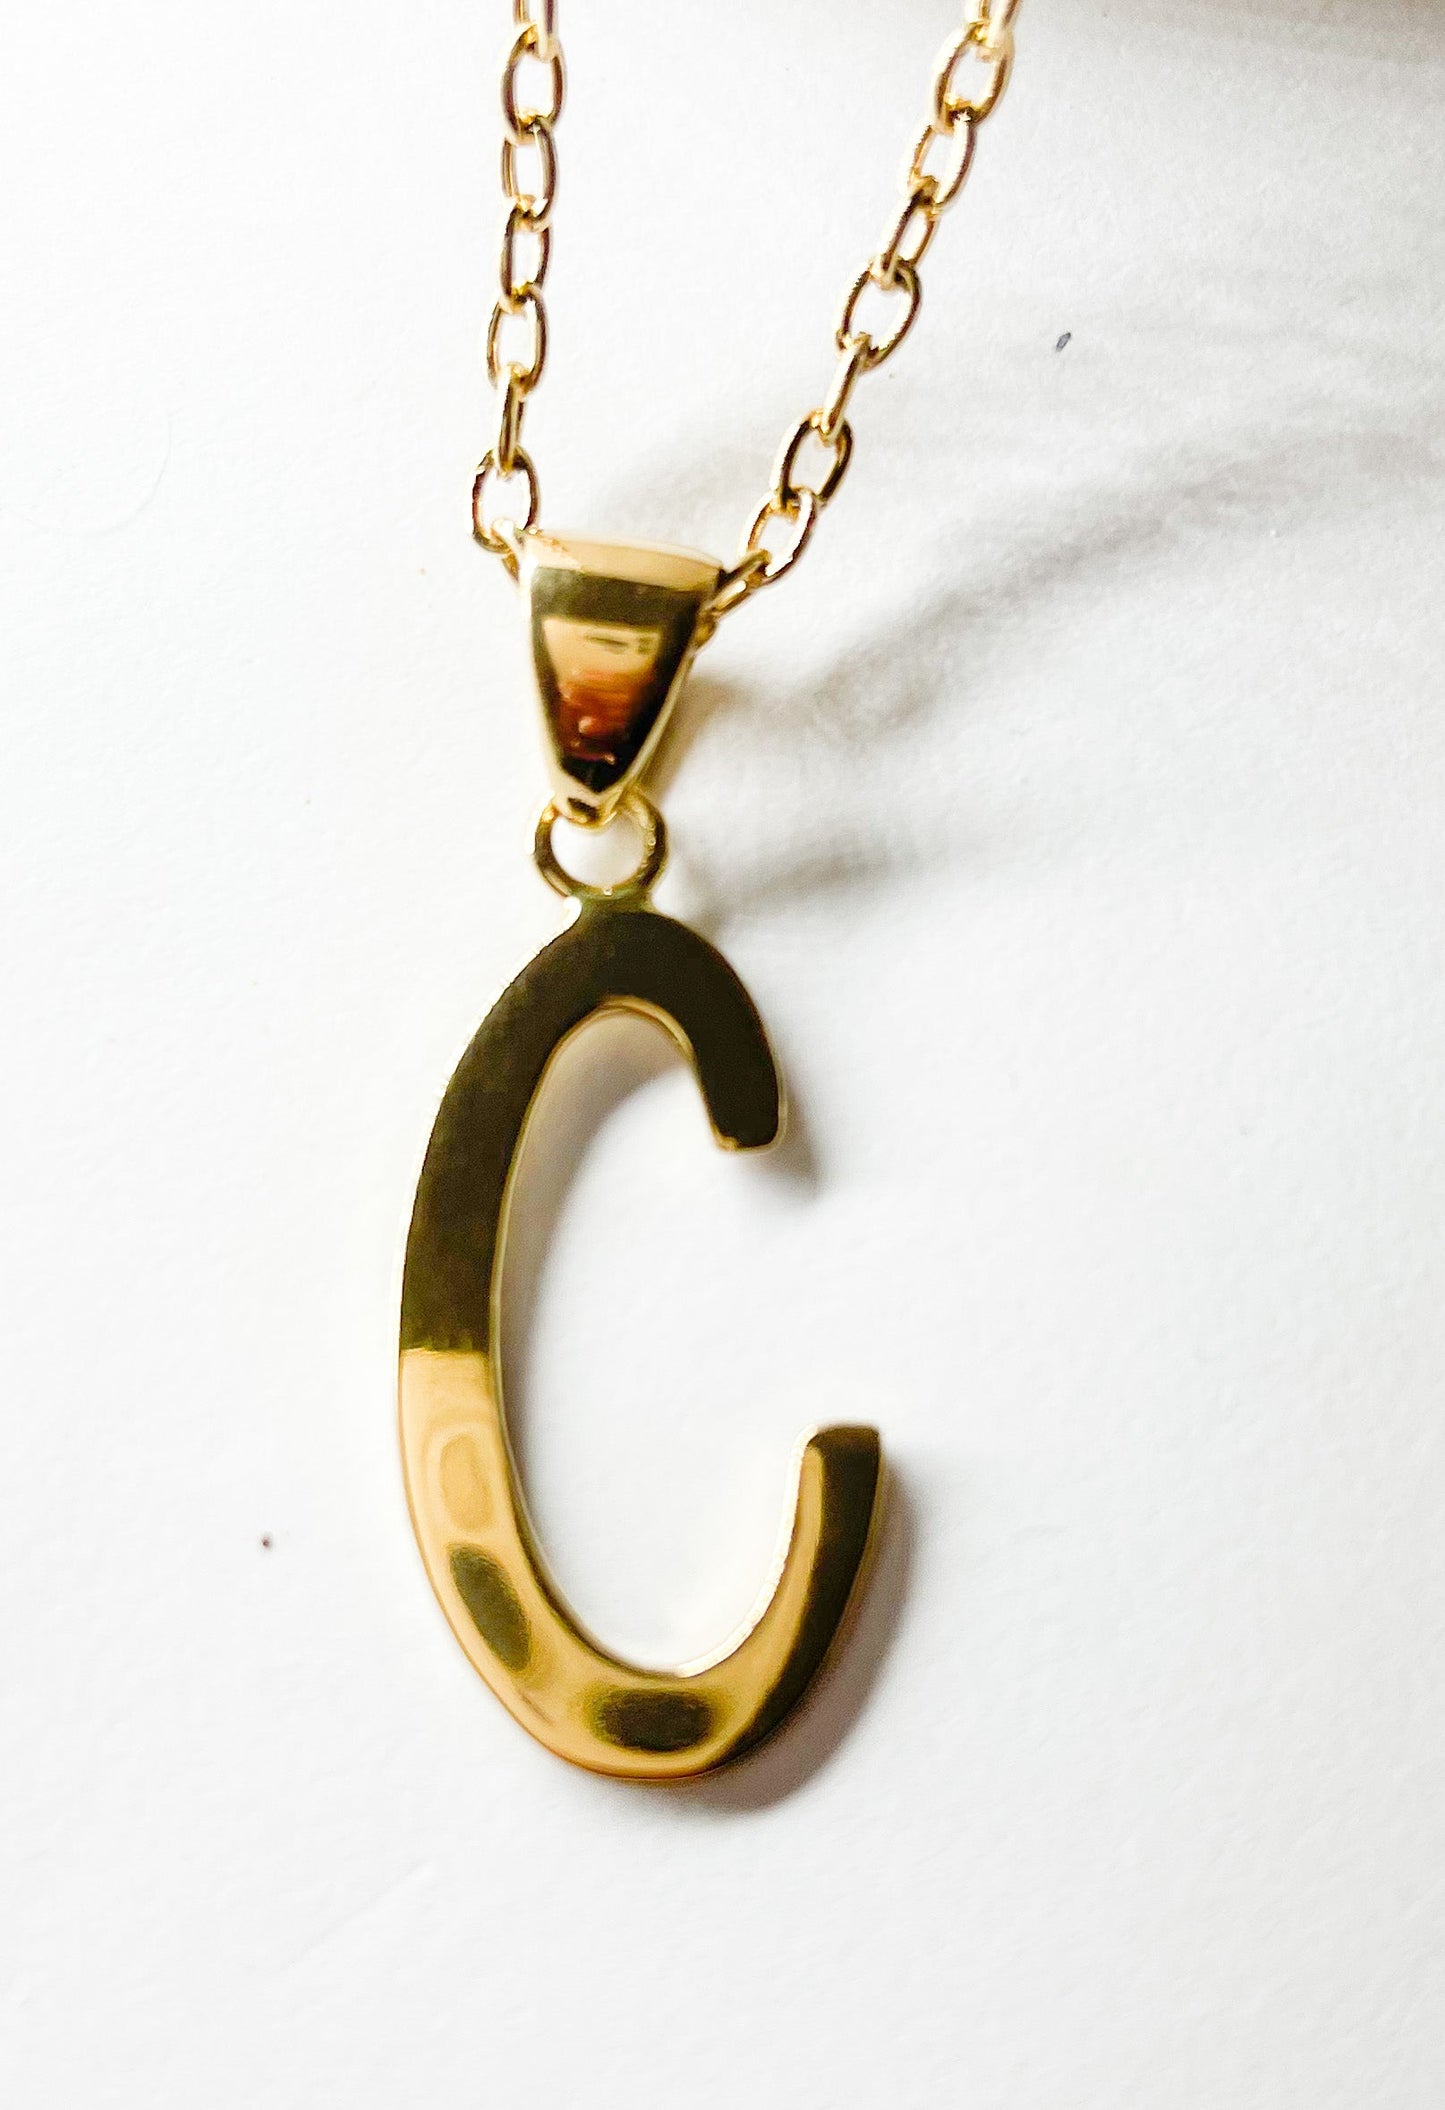 Initial "C" Pendant - Alchemia